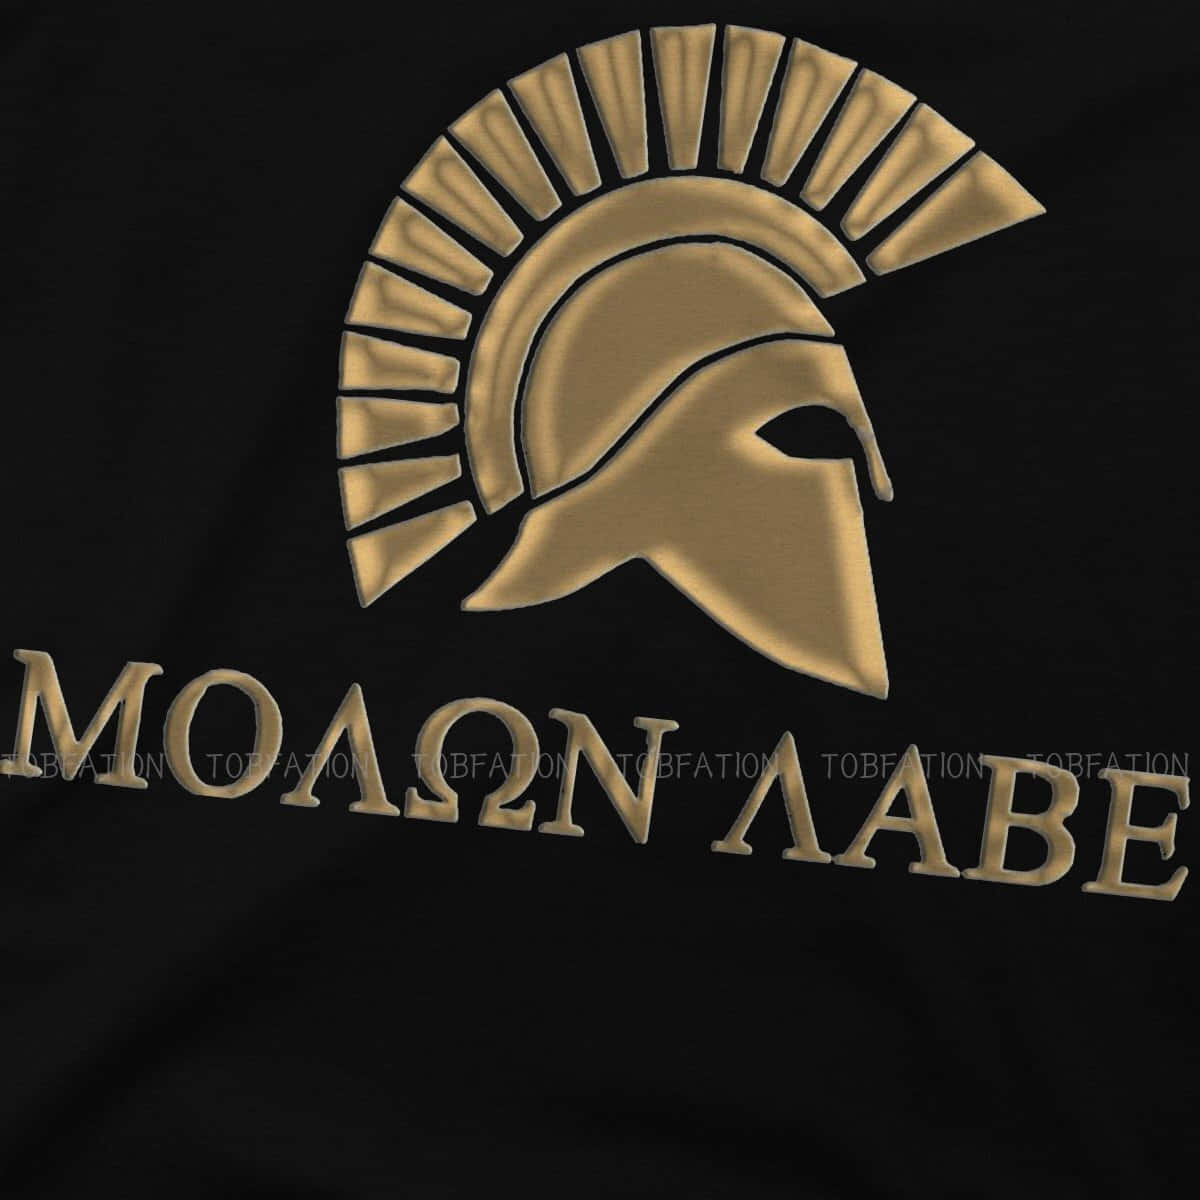 Moaon Abe - Gold Spartan Helmet T-shirt Wallpaper